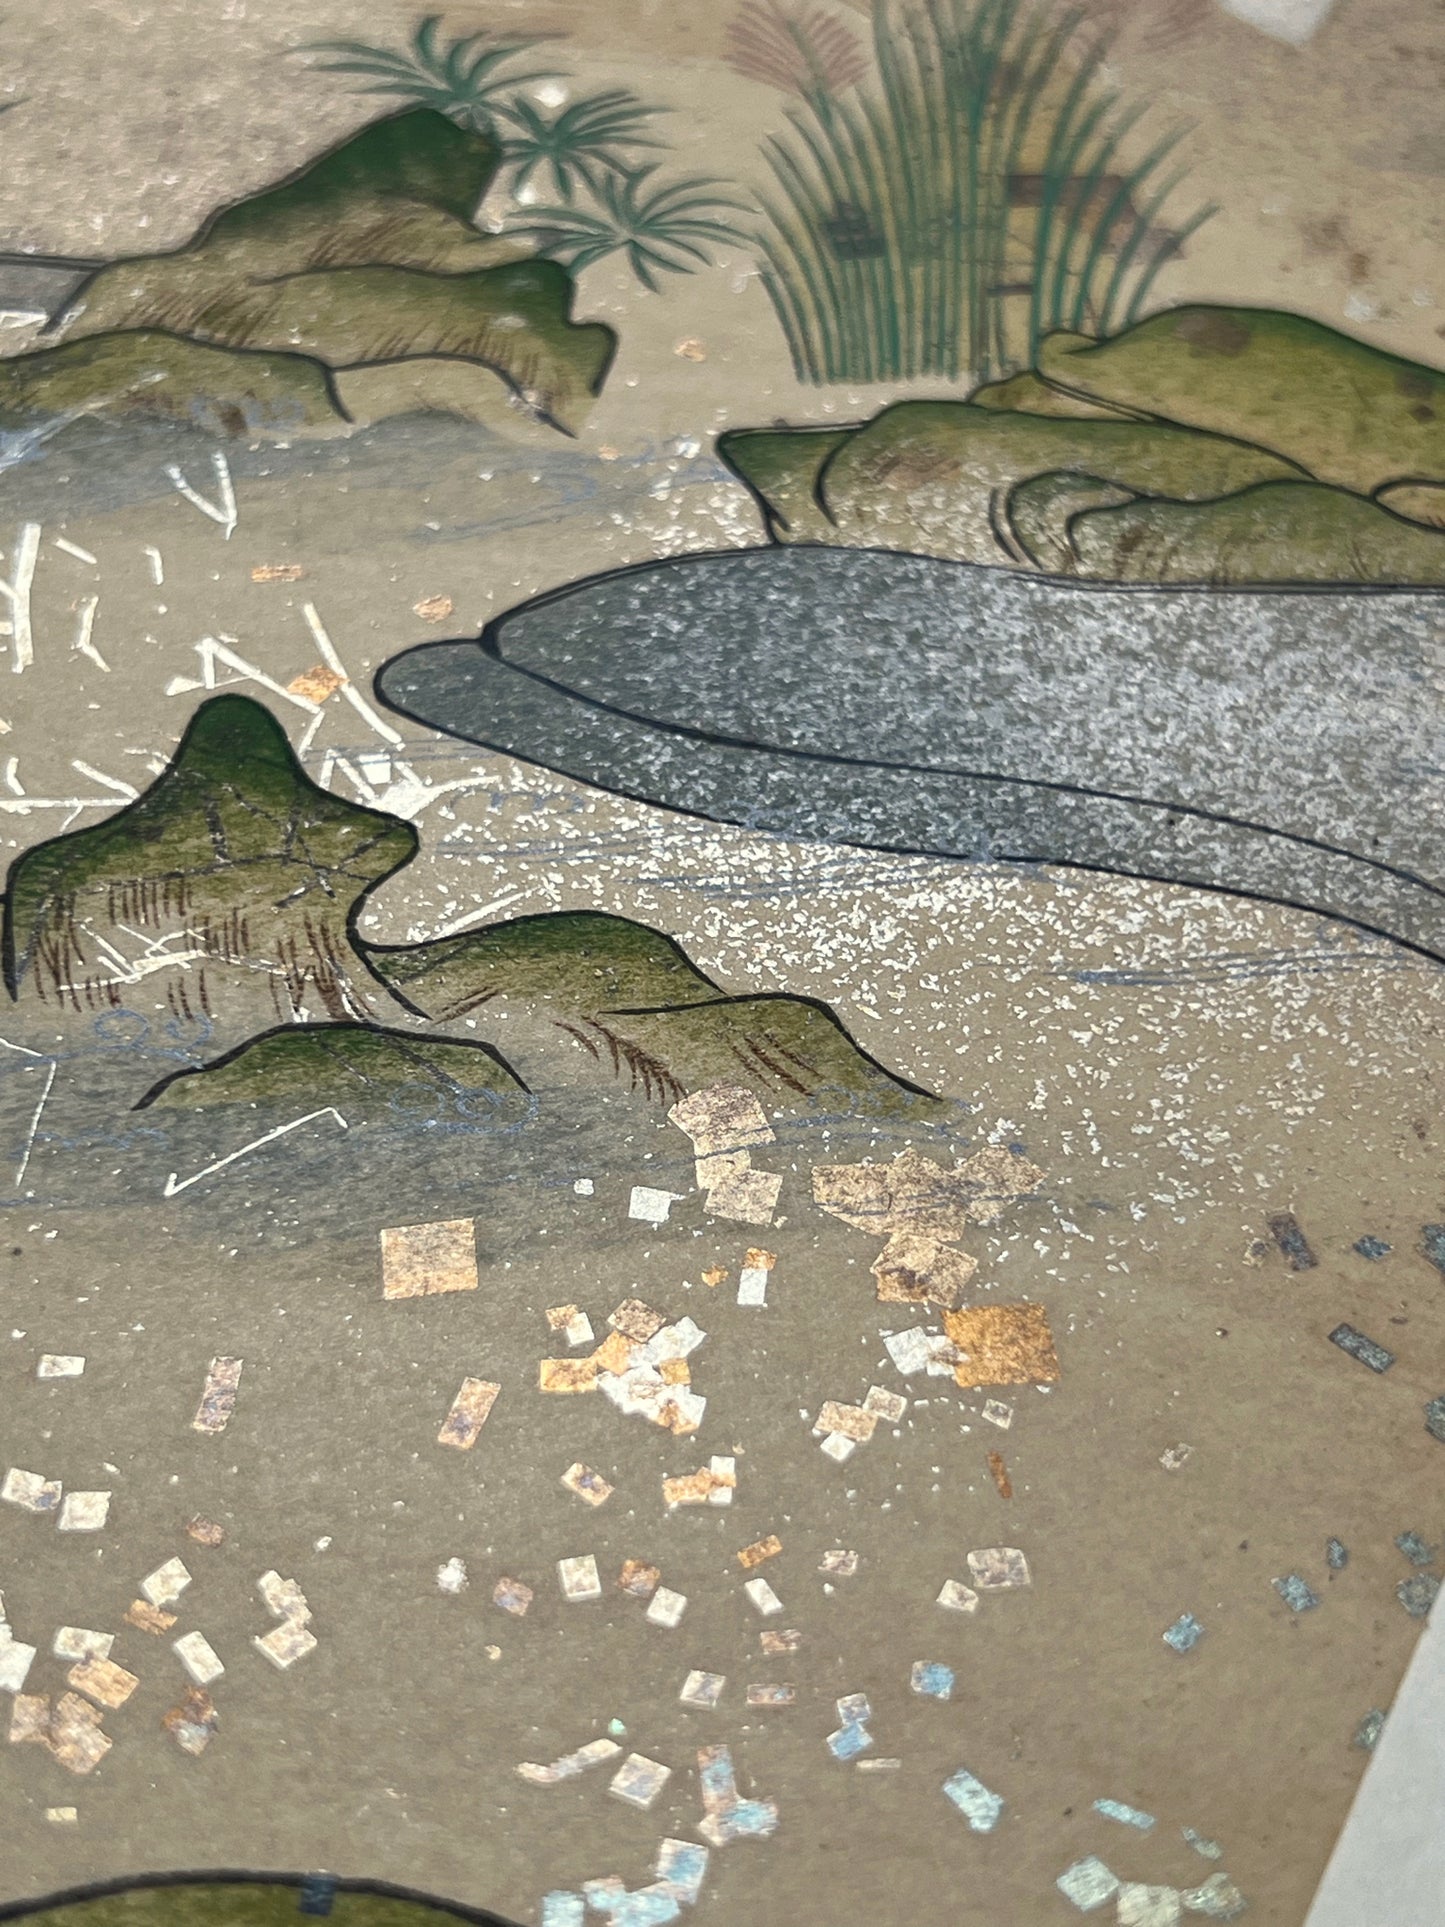 Estampe japonaise en forme d'éventail parsemée de fragments d'or et d'argent, gros plan sur l'eau de la rivière, herbes et rochers, fragments scintillants.